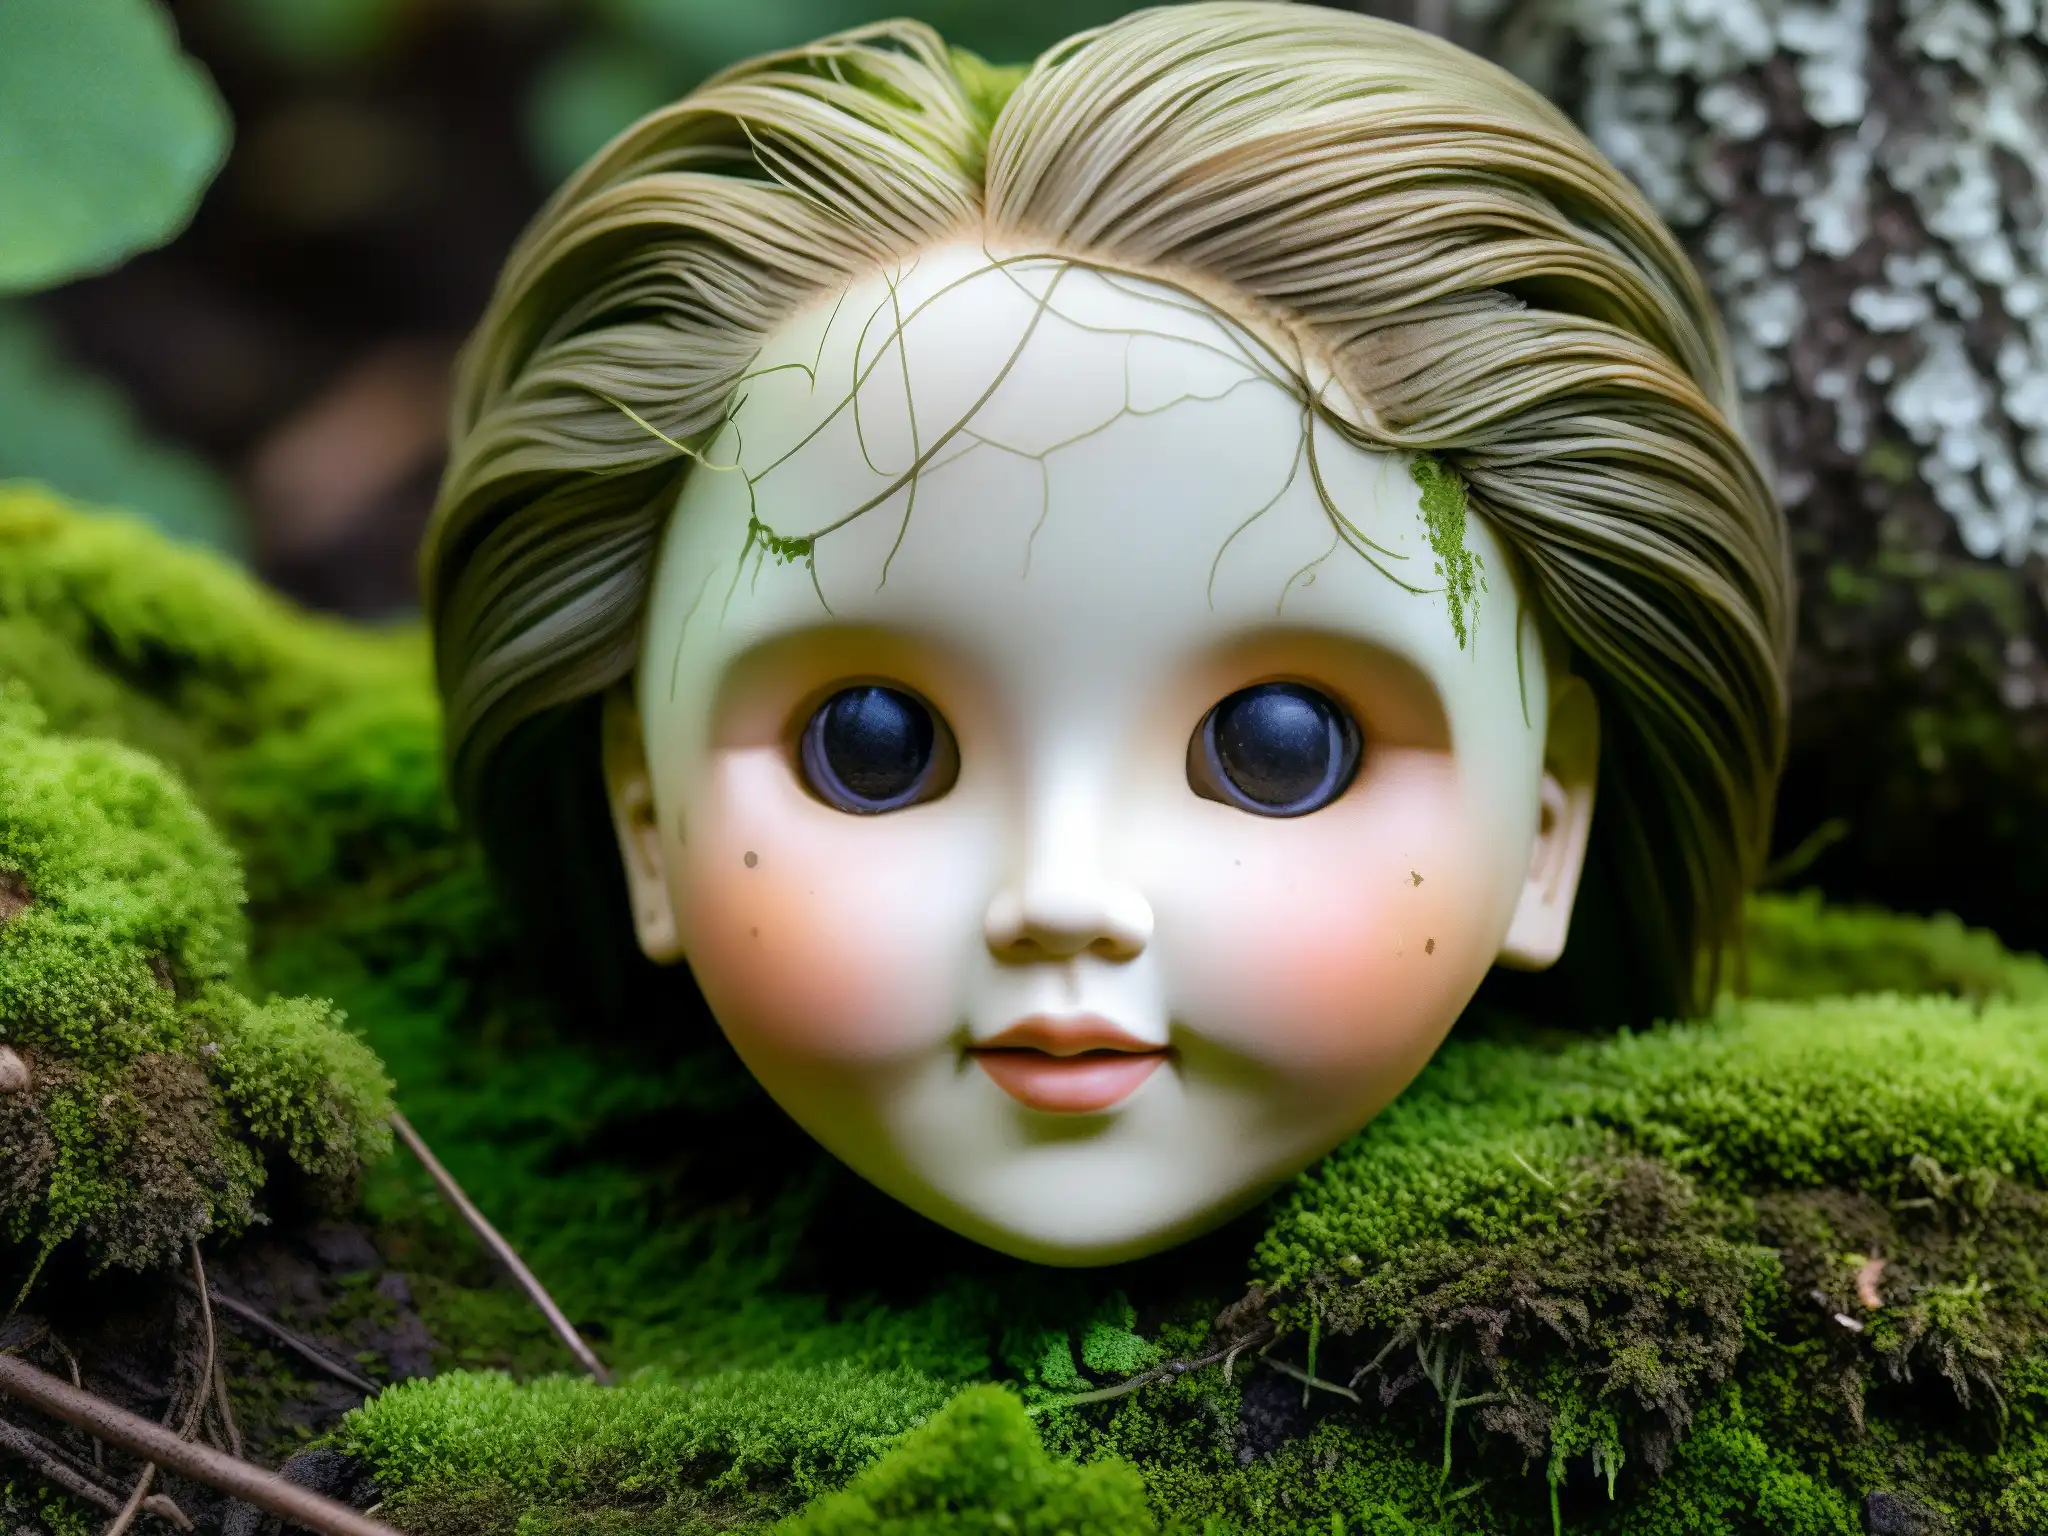 Una inquietante muñeca desgastada se asoma entre la maleza en la Isla de las Muñecas, con ojos vacíos y detalles desgastados